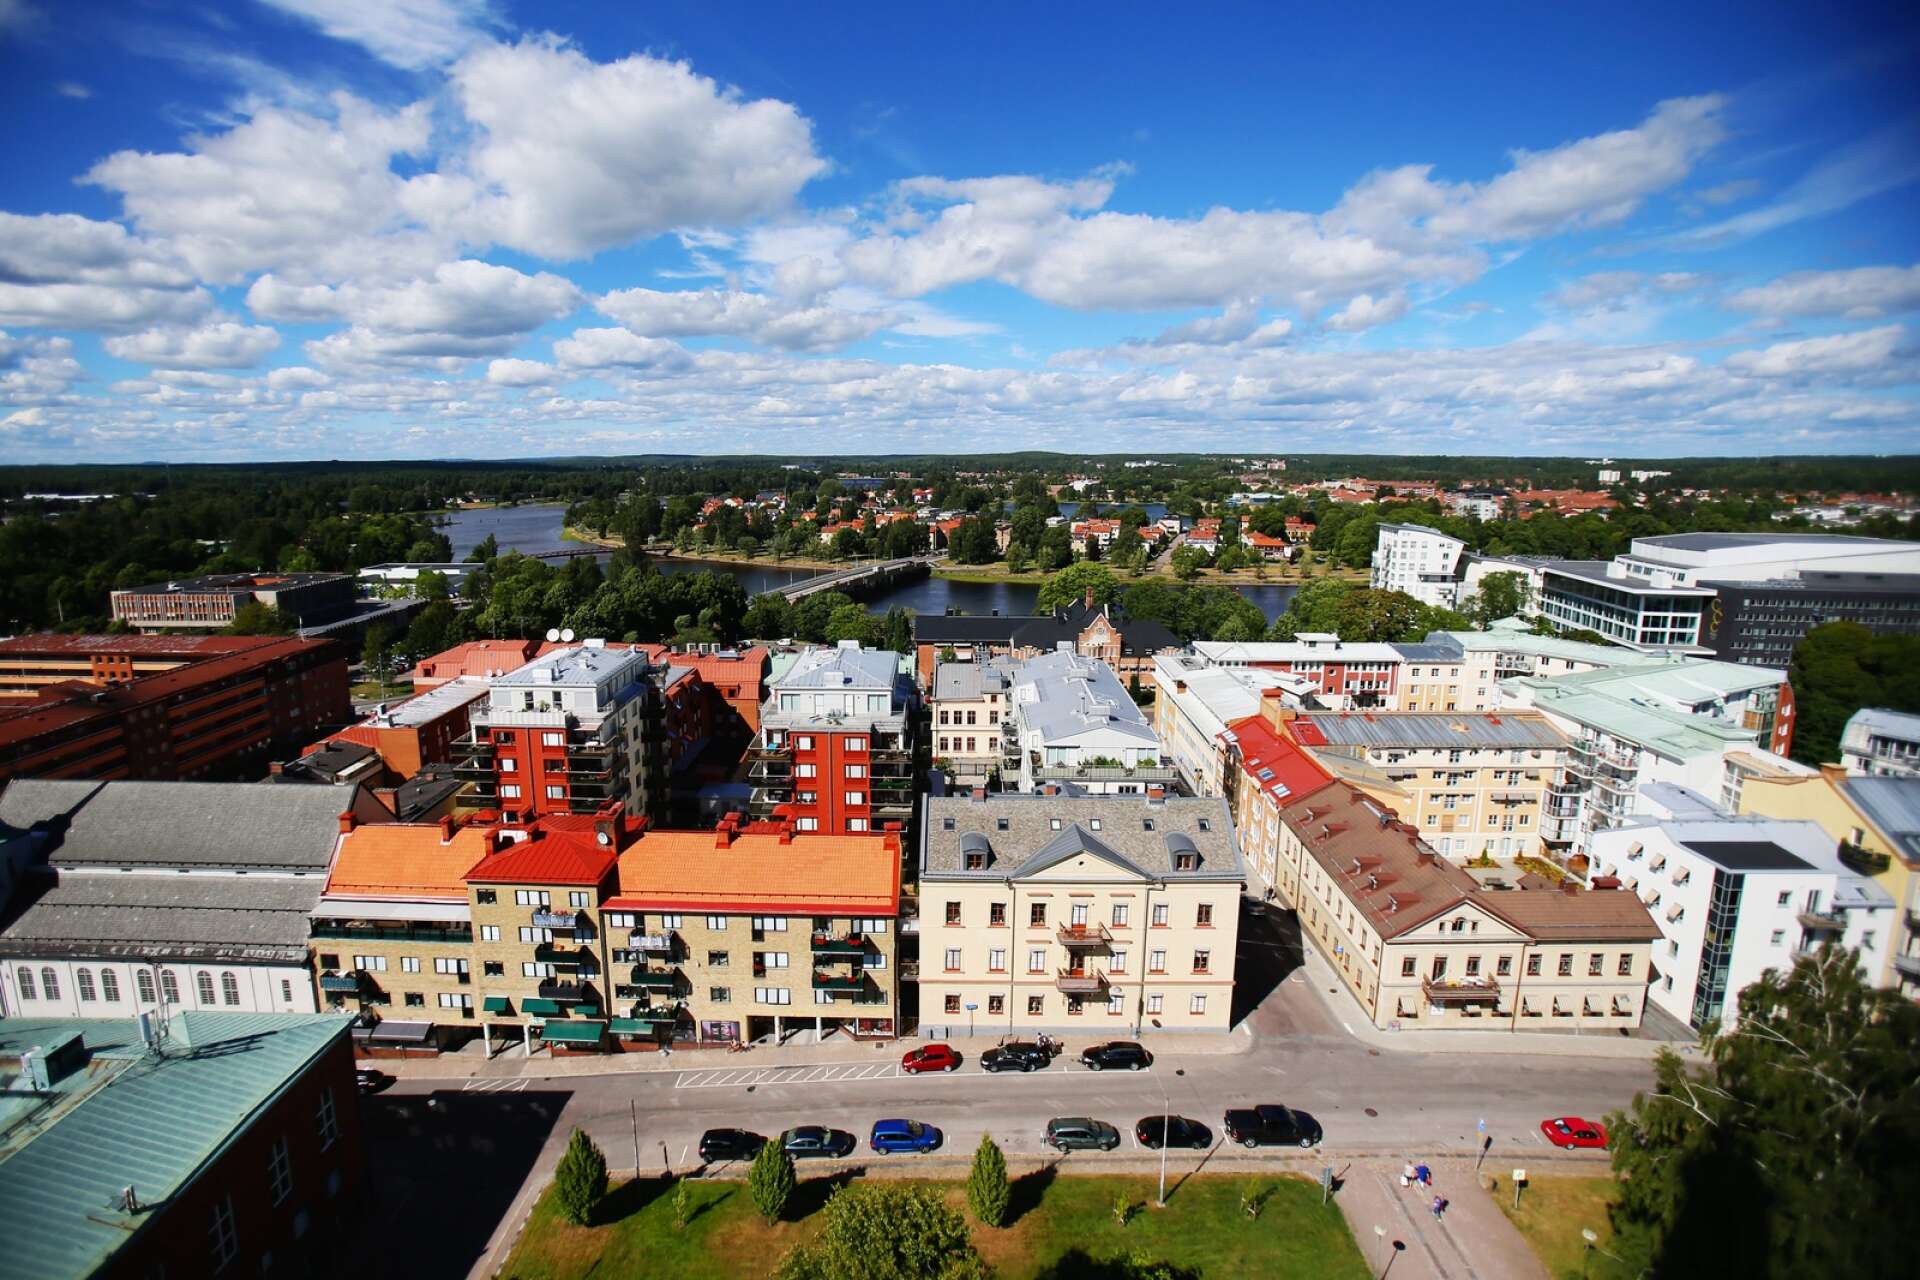 ”Karlstads nya översiktsplan måste tas fram i dialog med medborgarna”, betonar Socialdemokraterna i Karlstad.